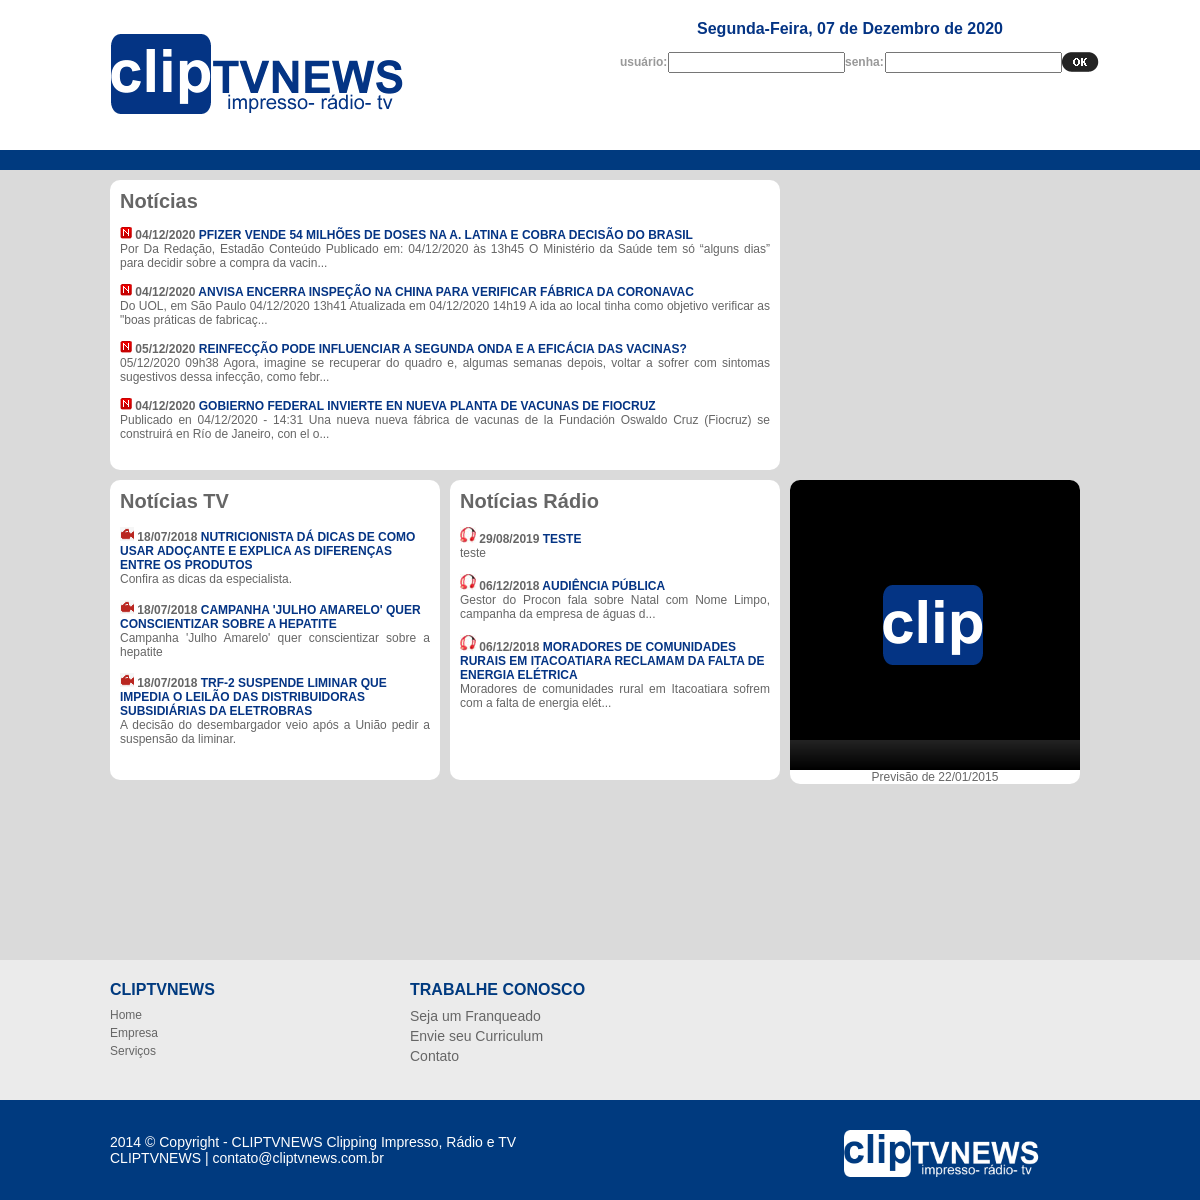 A complete backup of cliptvnews.com.br